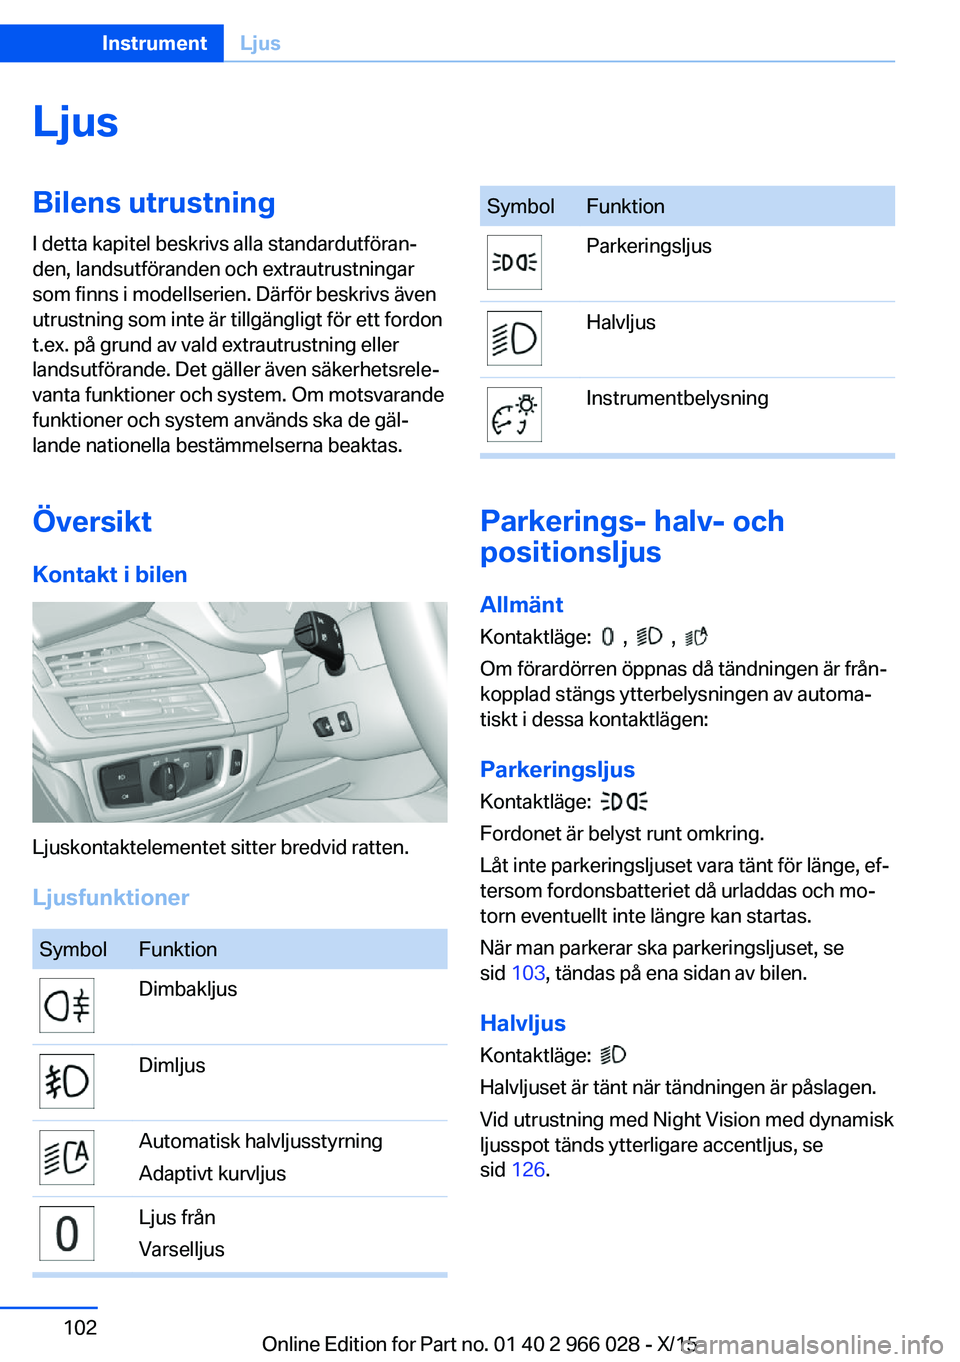 BMW X6 2016  InstruktionsbÖcker (in Swedish) LjusBilens utrustningI detta kapitel beskrivs alla standardutföran‐
den, landsutföranden och extrautrustningar
som finns i modellserien. Därför beskrivs även
utrustning som inte är tillgängli